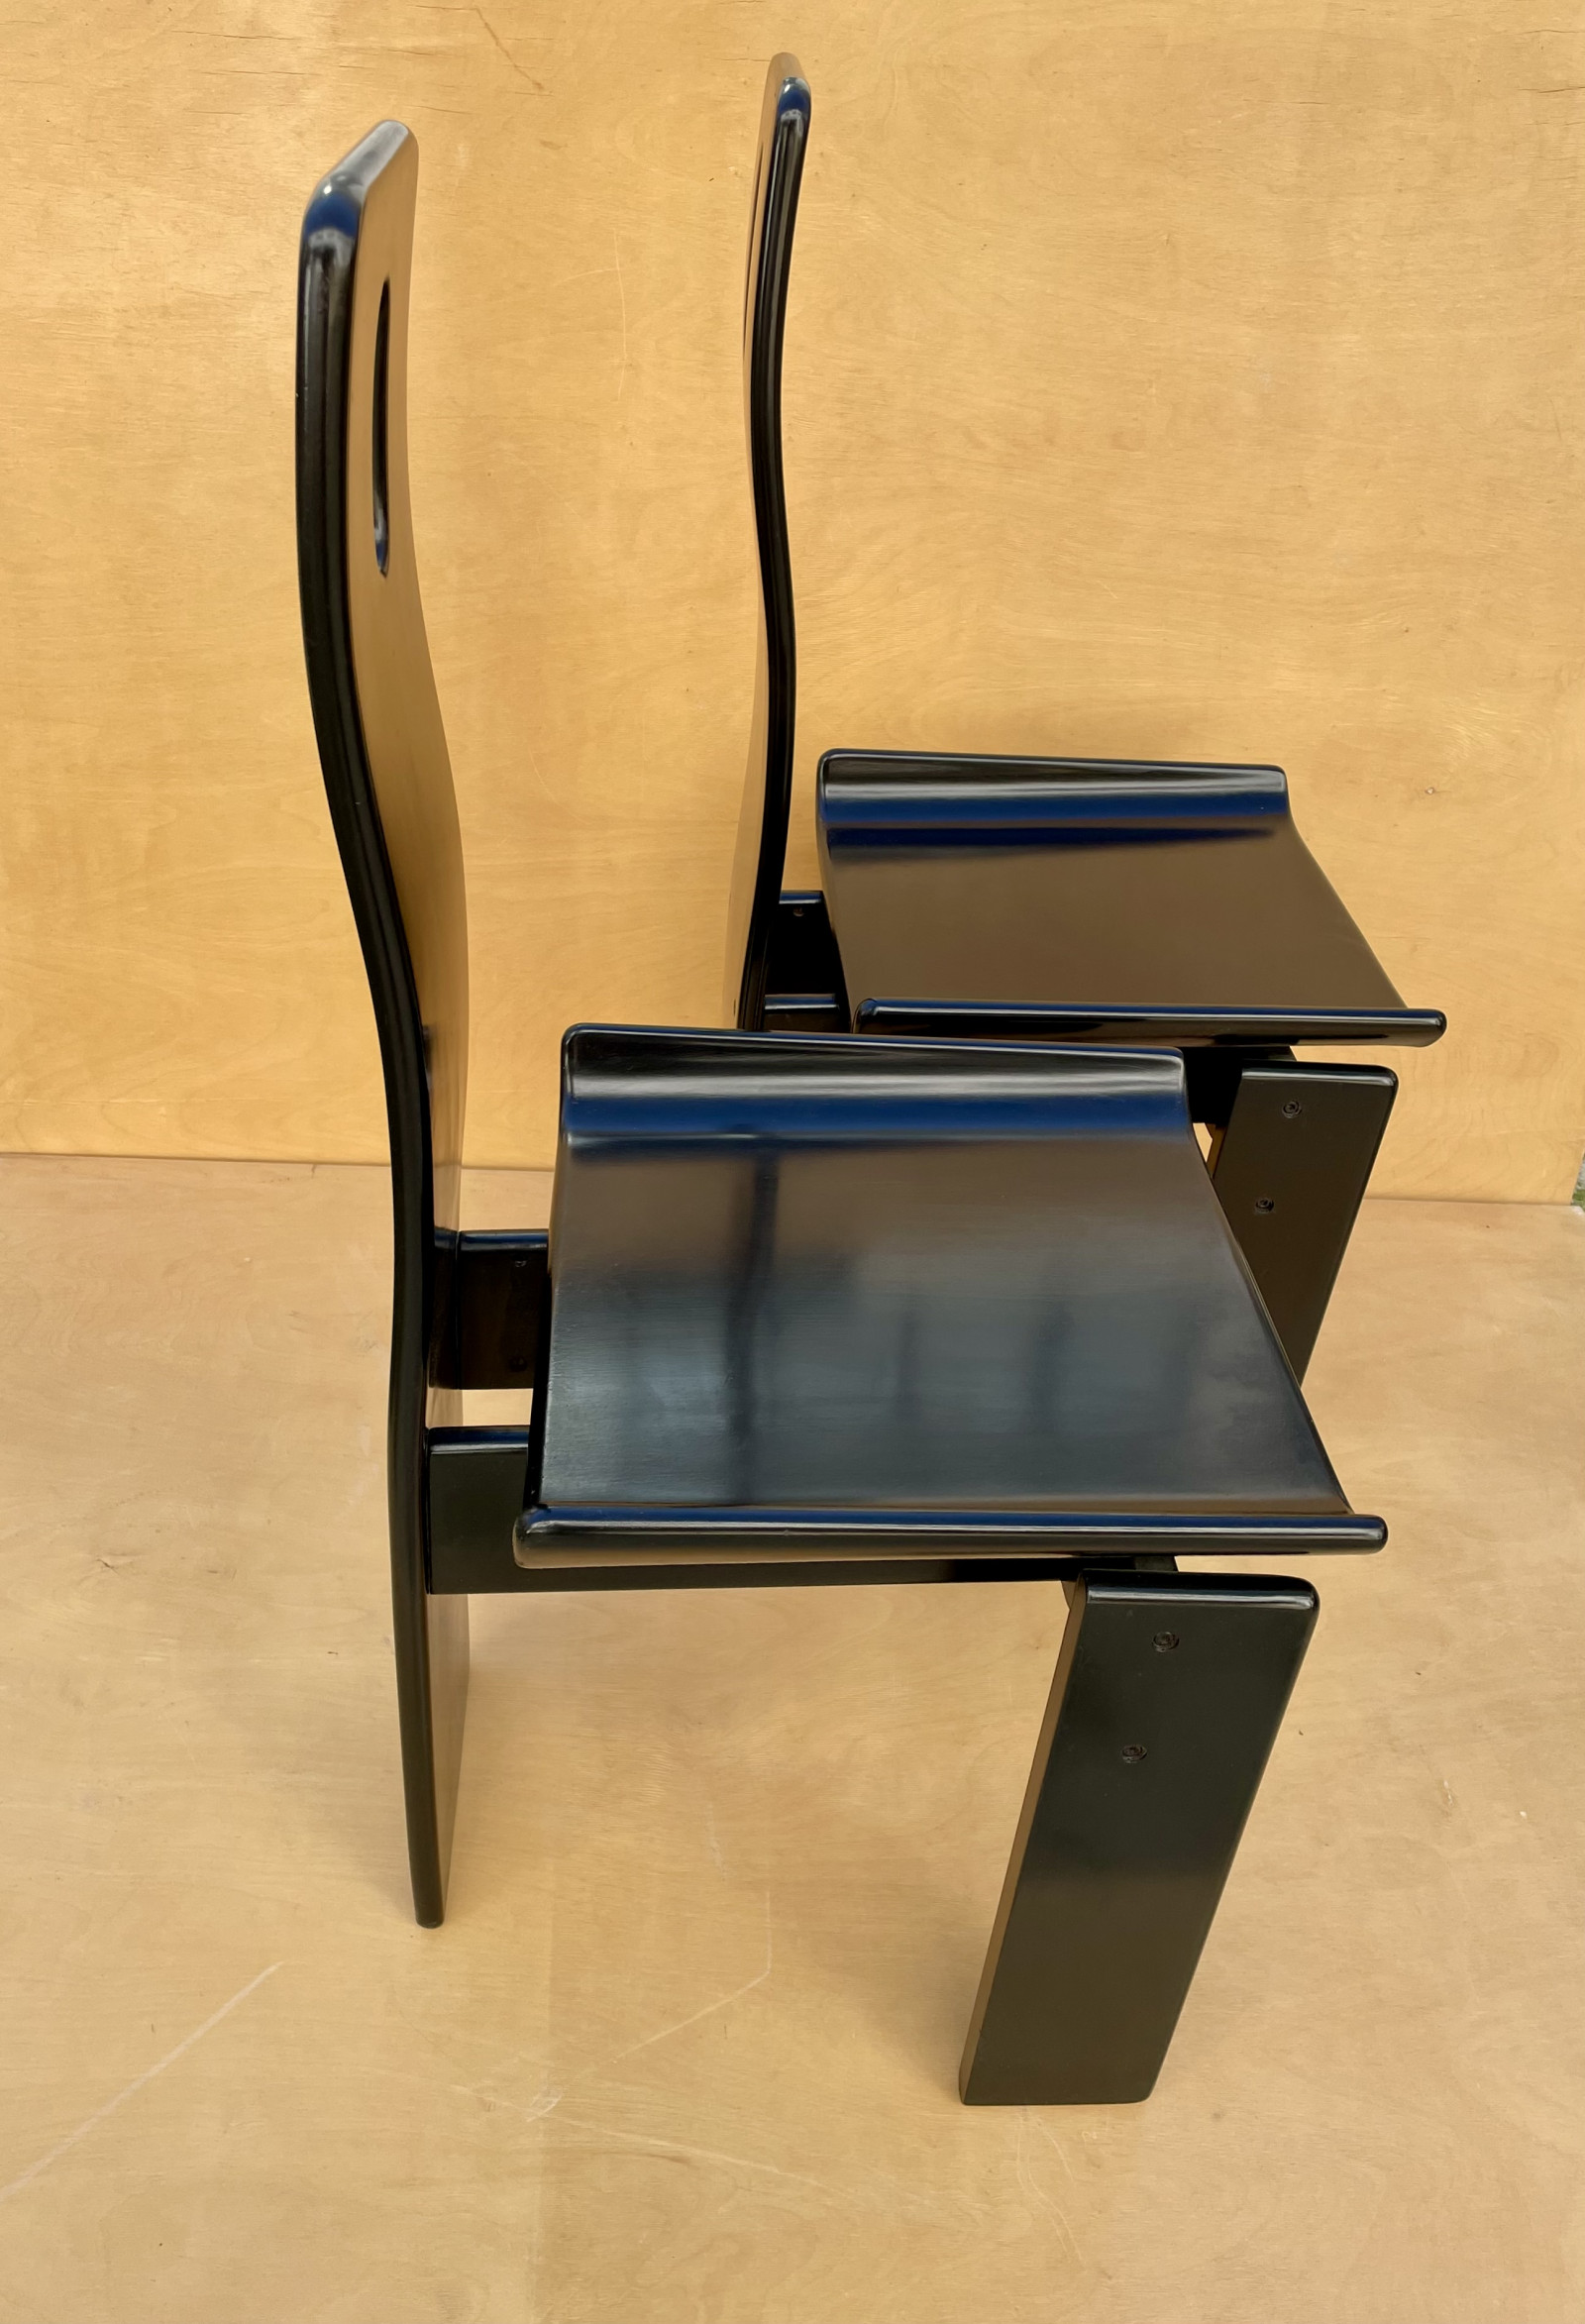 4 Edoardo Landi - Diago Chairs -